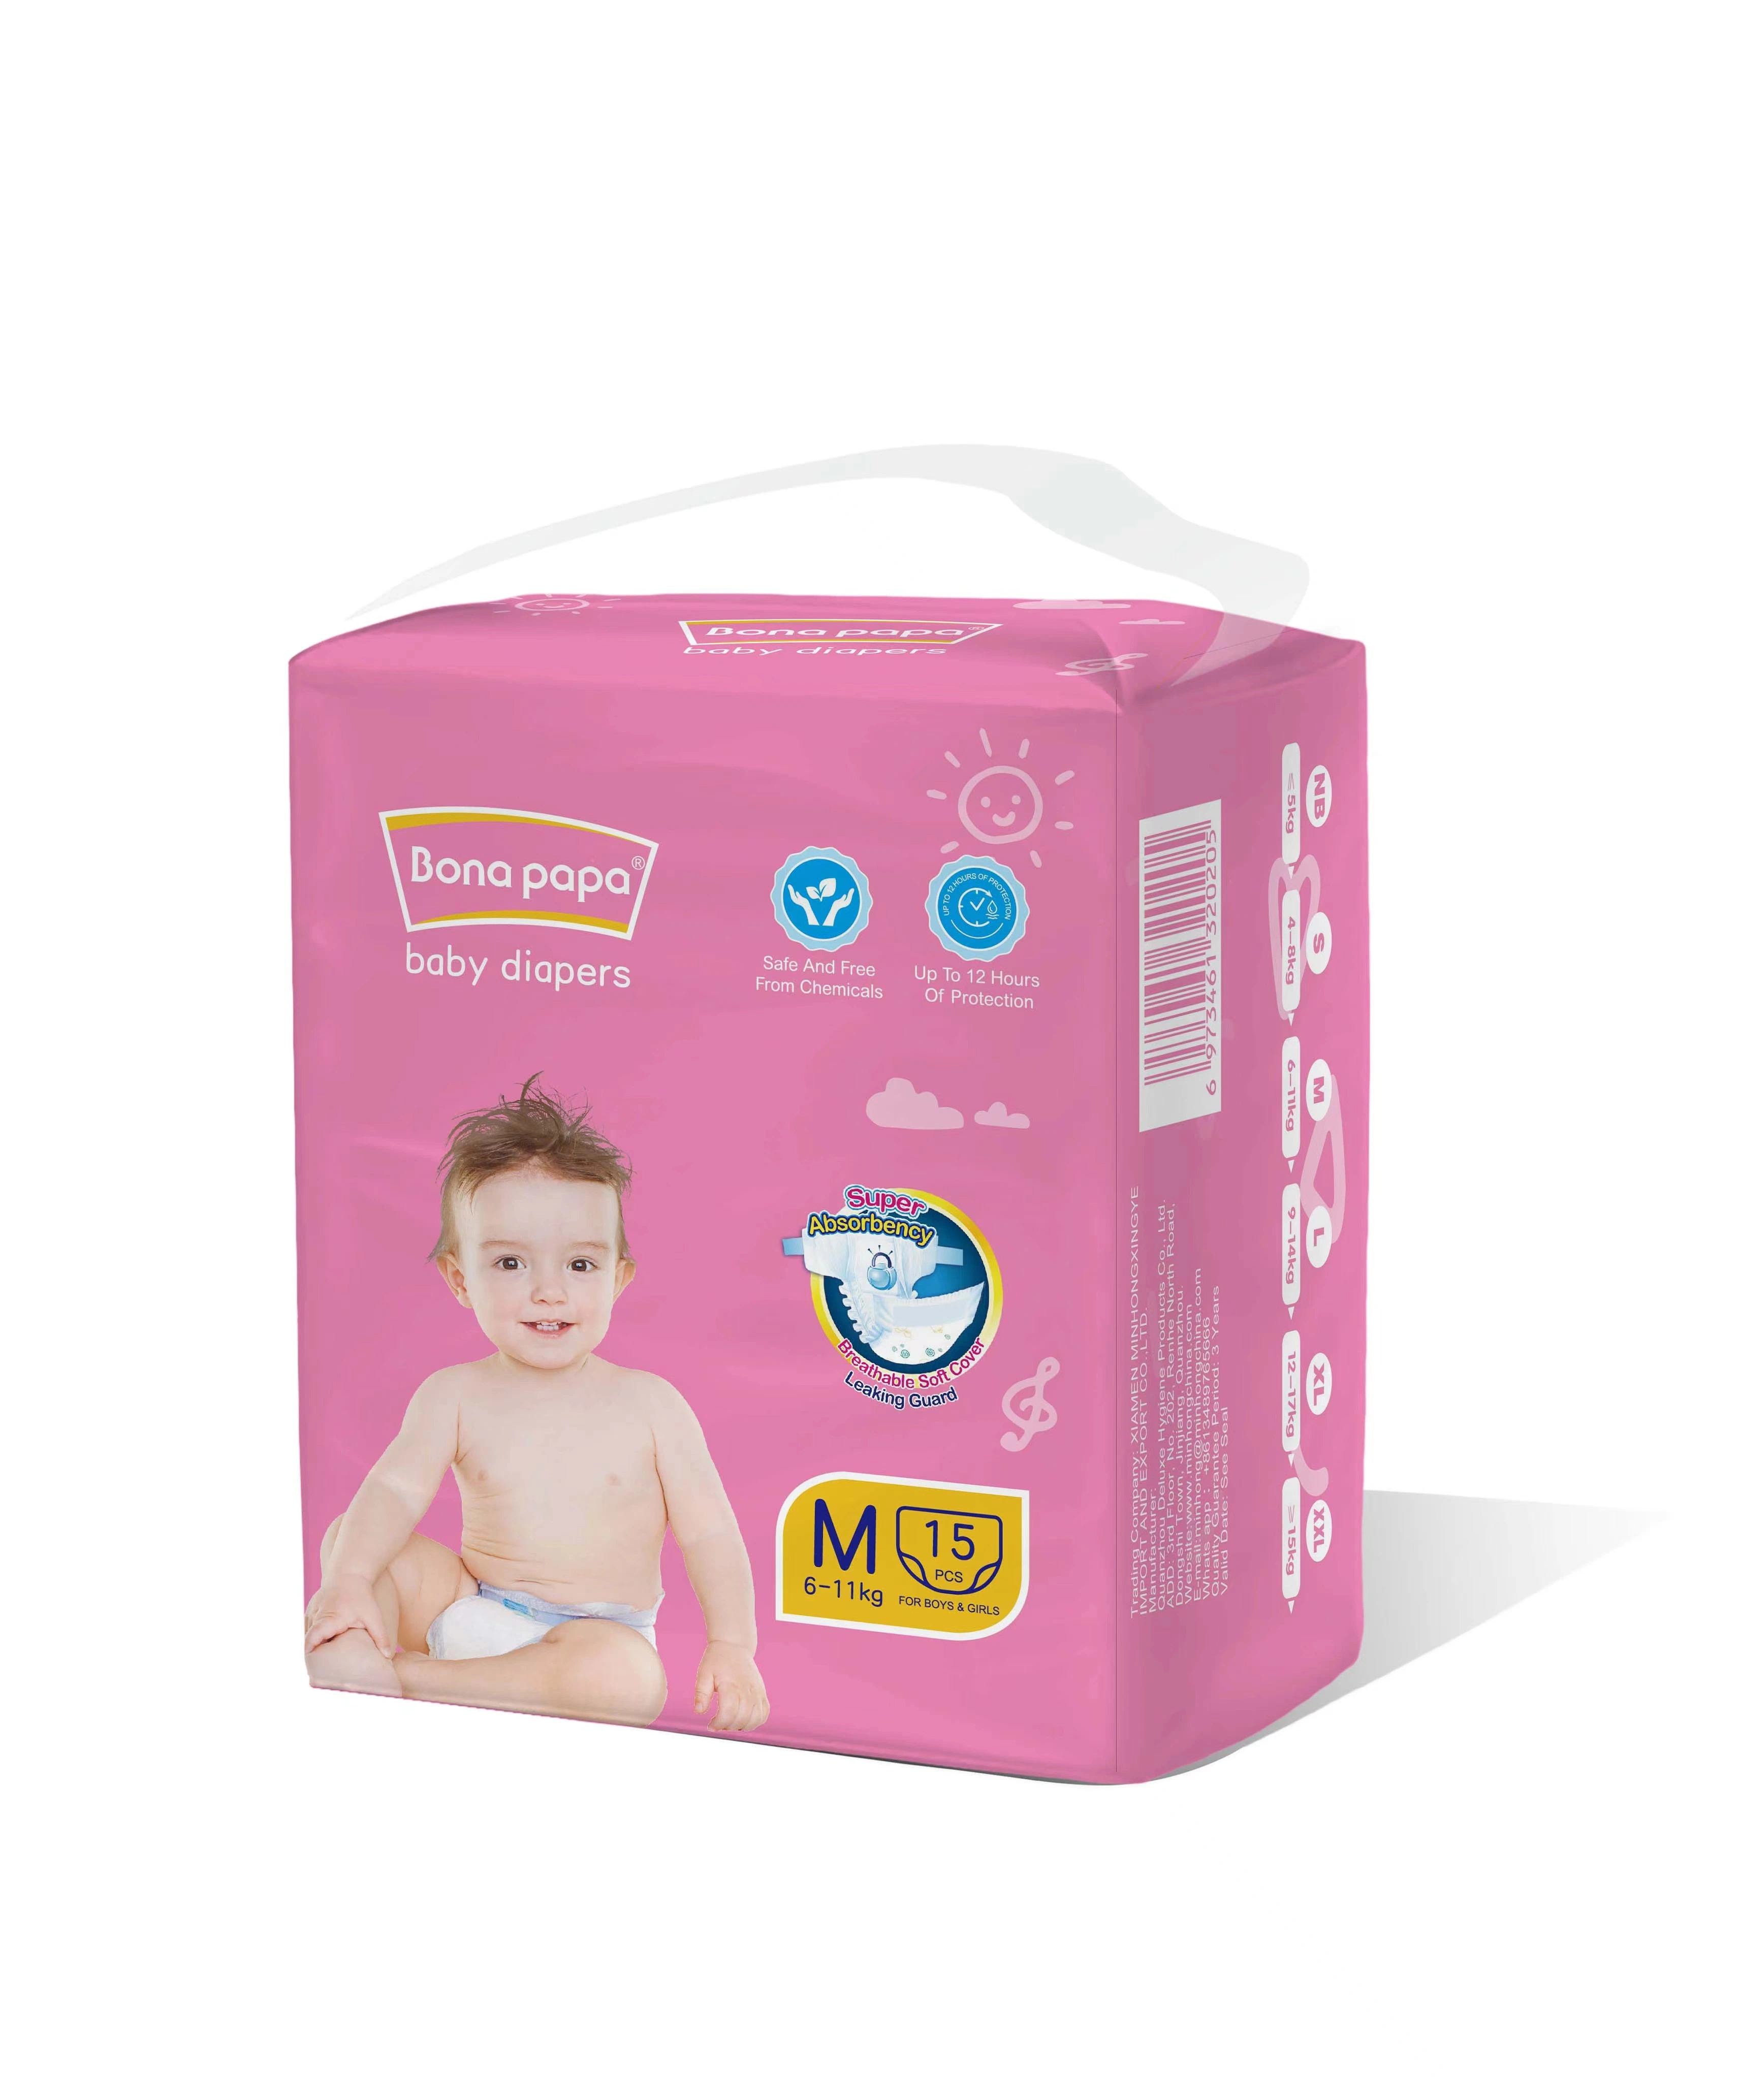 Heißer Verkauf Großhandel Premium-Qualität Ultra Soft Hohe Absorption Billig Preis atmungsaktive Pflege Baby komfortable Windel Windel Nappy Artikel Made in China